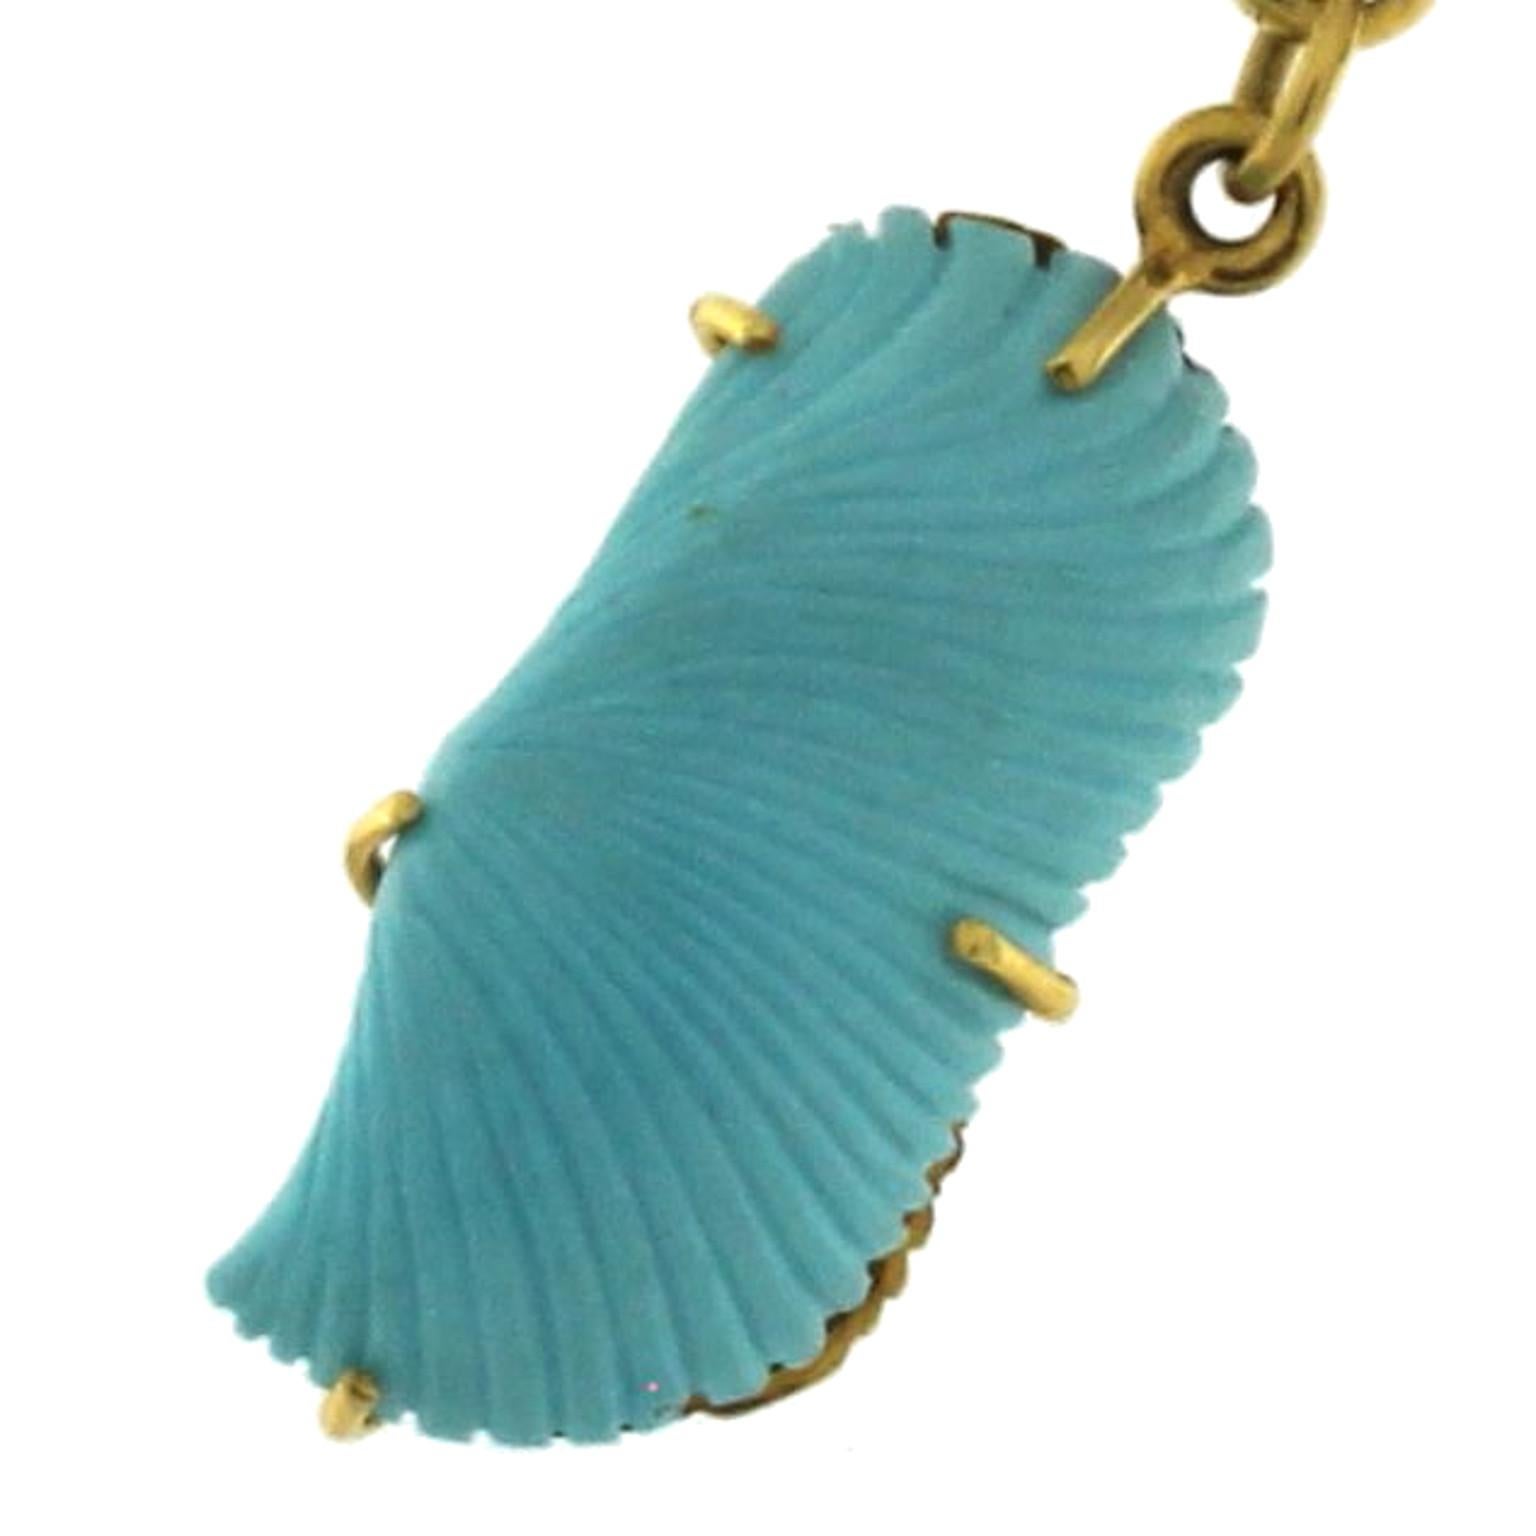 Diese schöne Halskette aus der Beachwear-Kollektion reproduziert einige Meereselemente abwechselnd in Türkis und Gold, für beide Materialien hat der Bildhauer eine hervorragende Arbeit der realistischen Wiedergabe sehr treu getan. Das Ergebnis ist